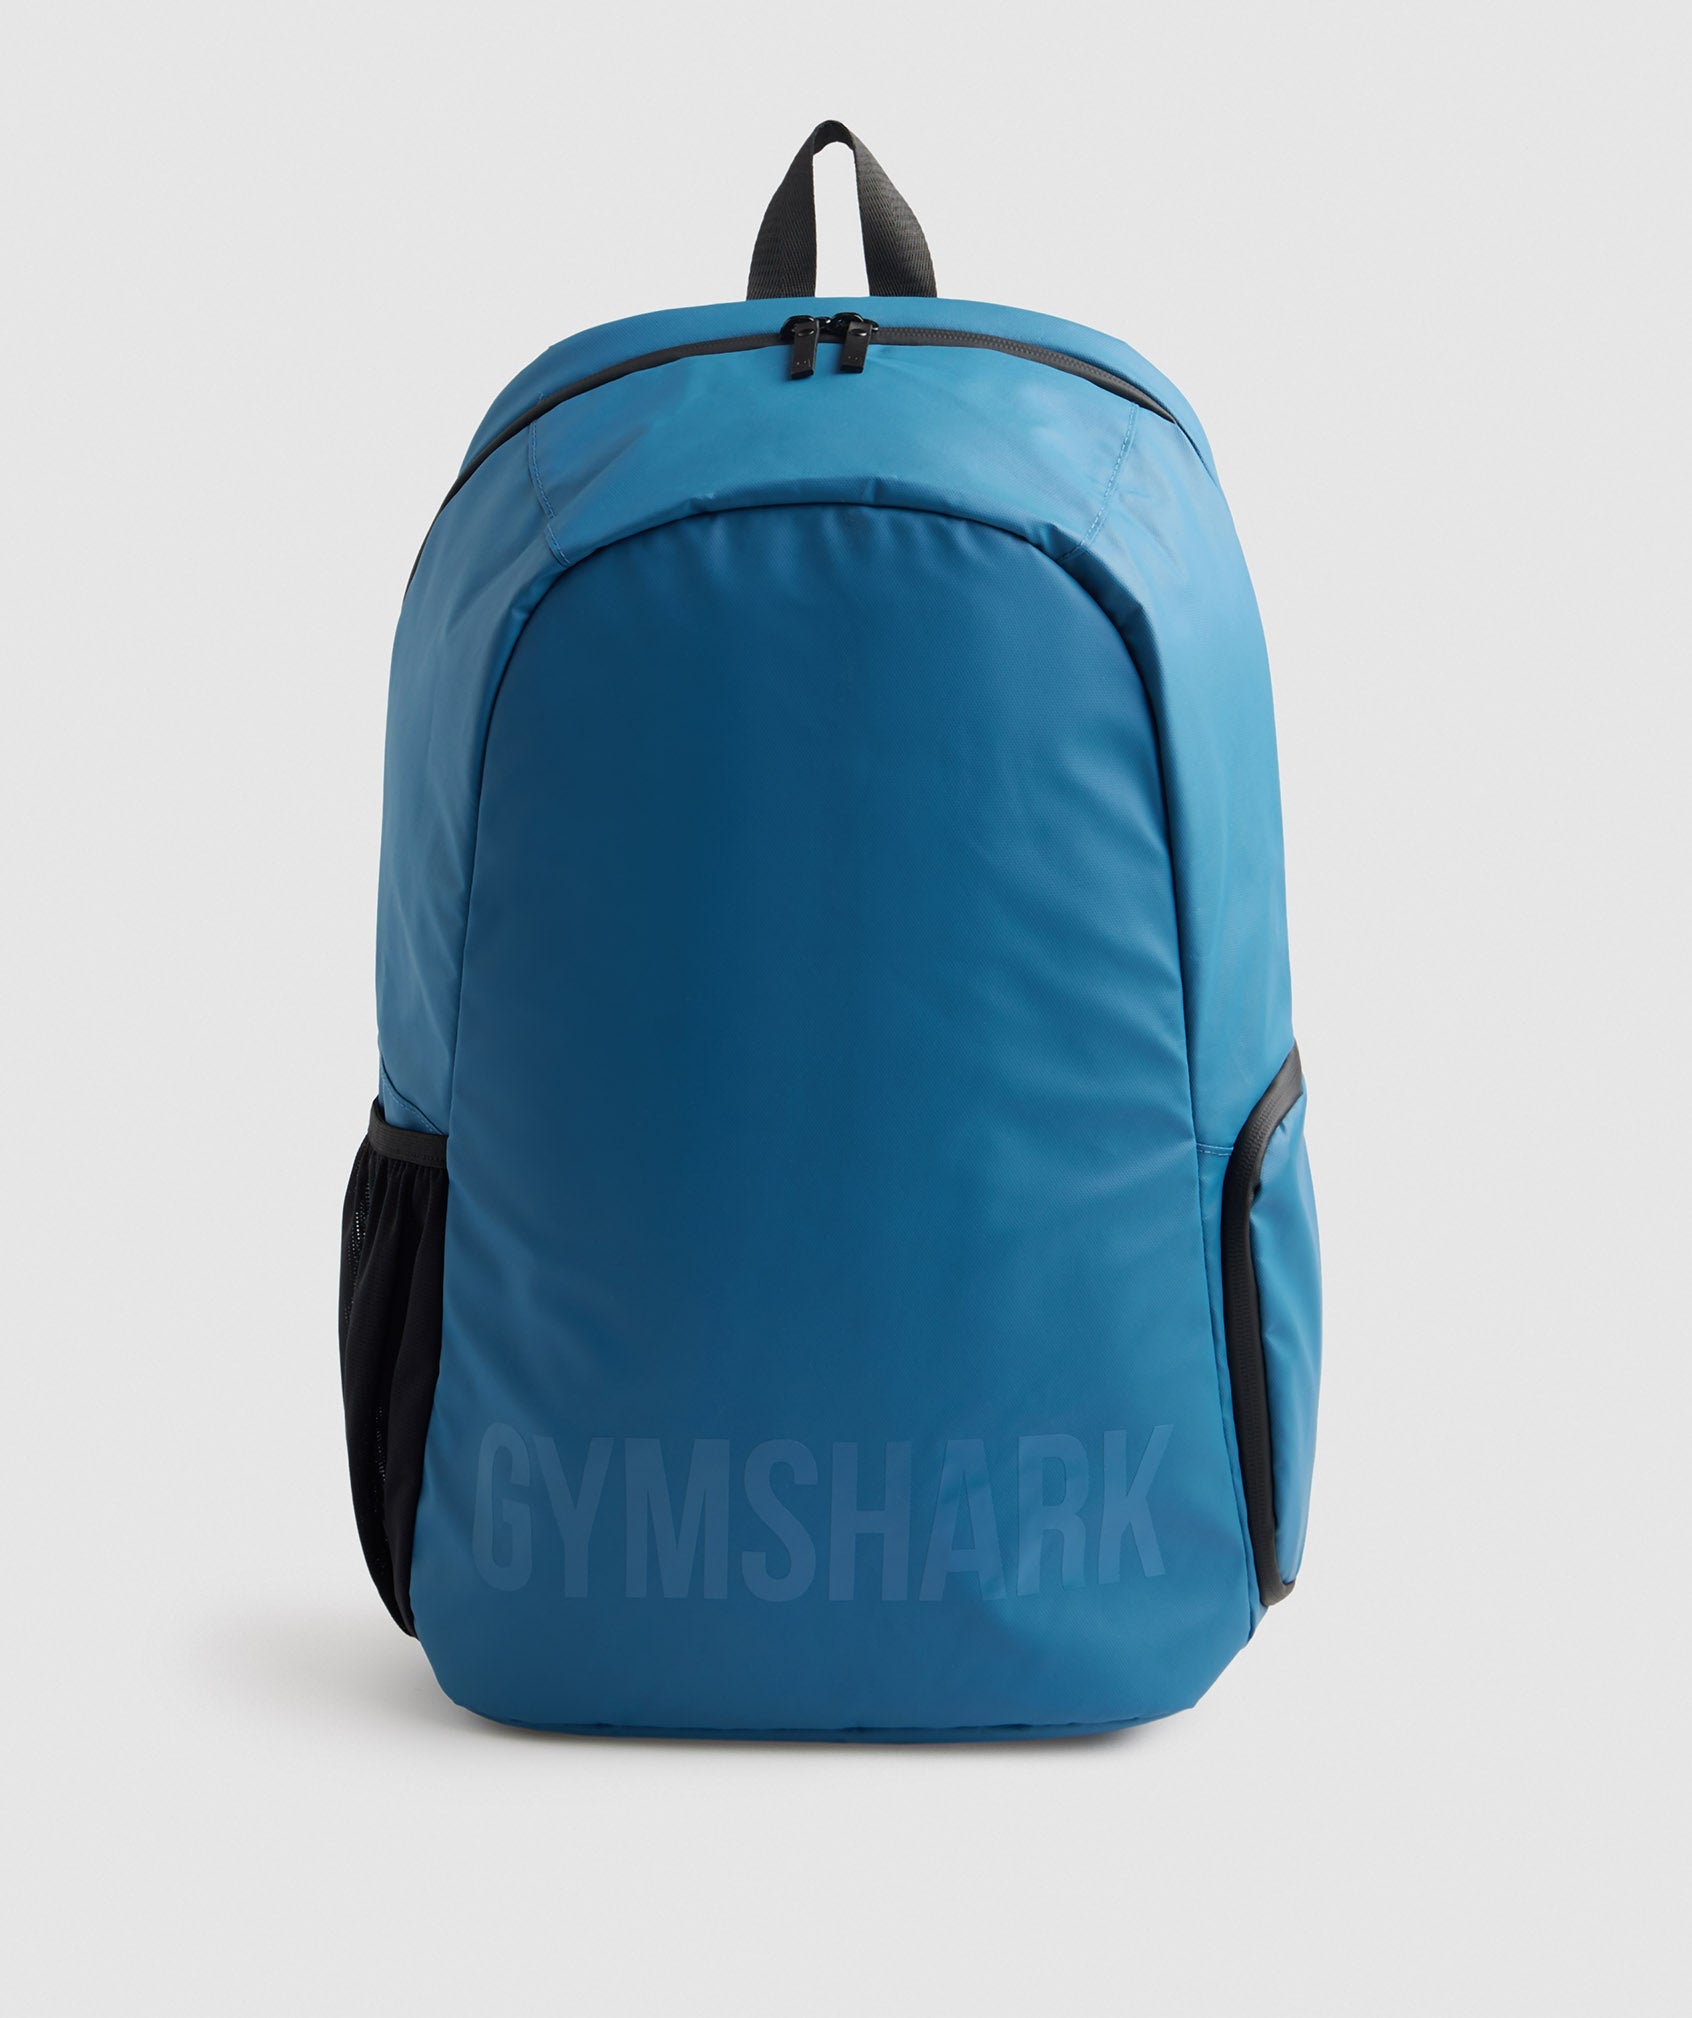 Gymshark X-Series 0.1 Tasche Damen Blau | 1258634-HR